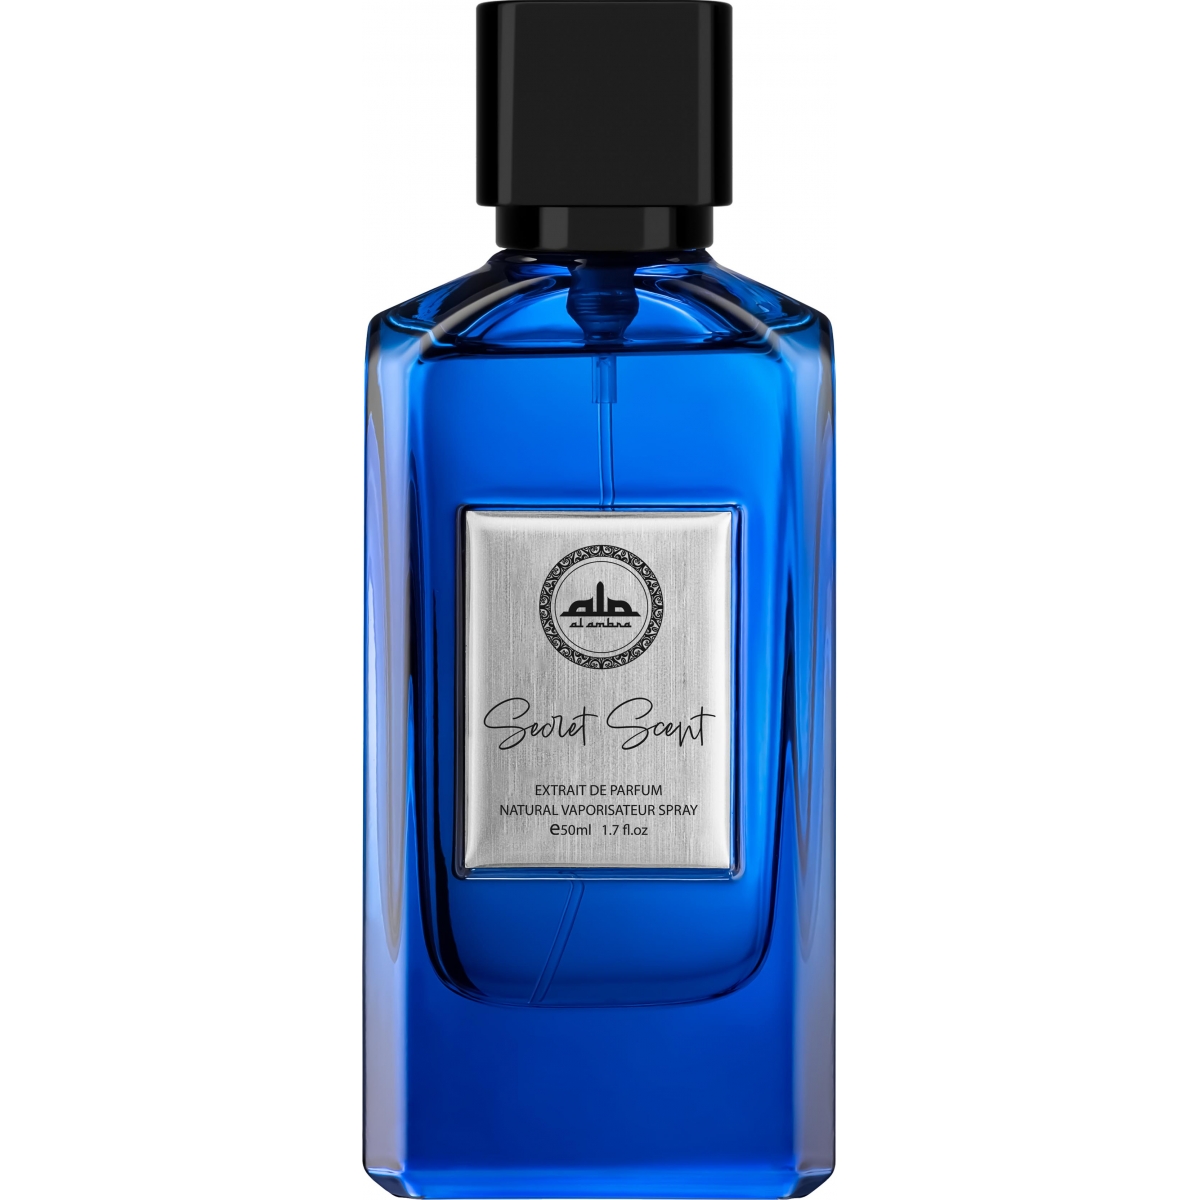 Secret Scent Al Ambra Perfumes Perfumes, Profumi Unisex, Arada Perfumes